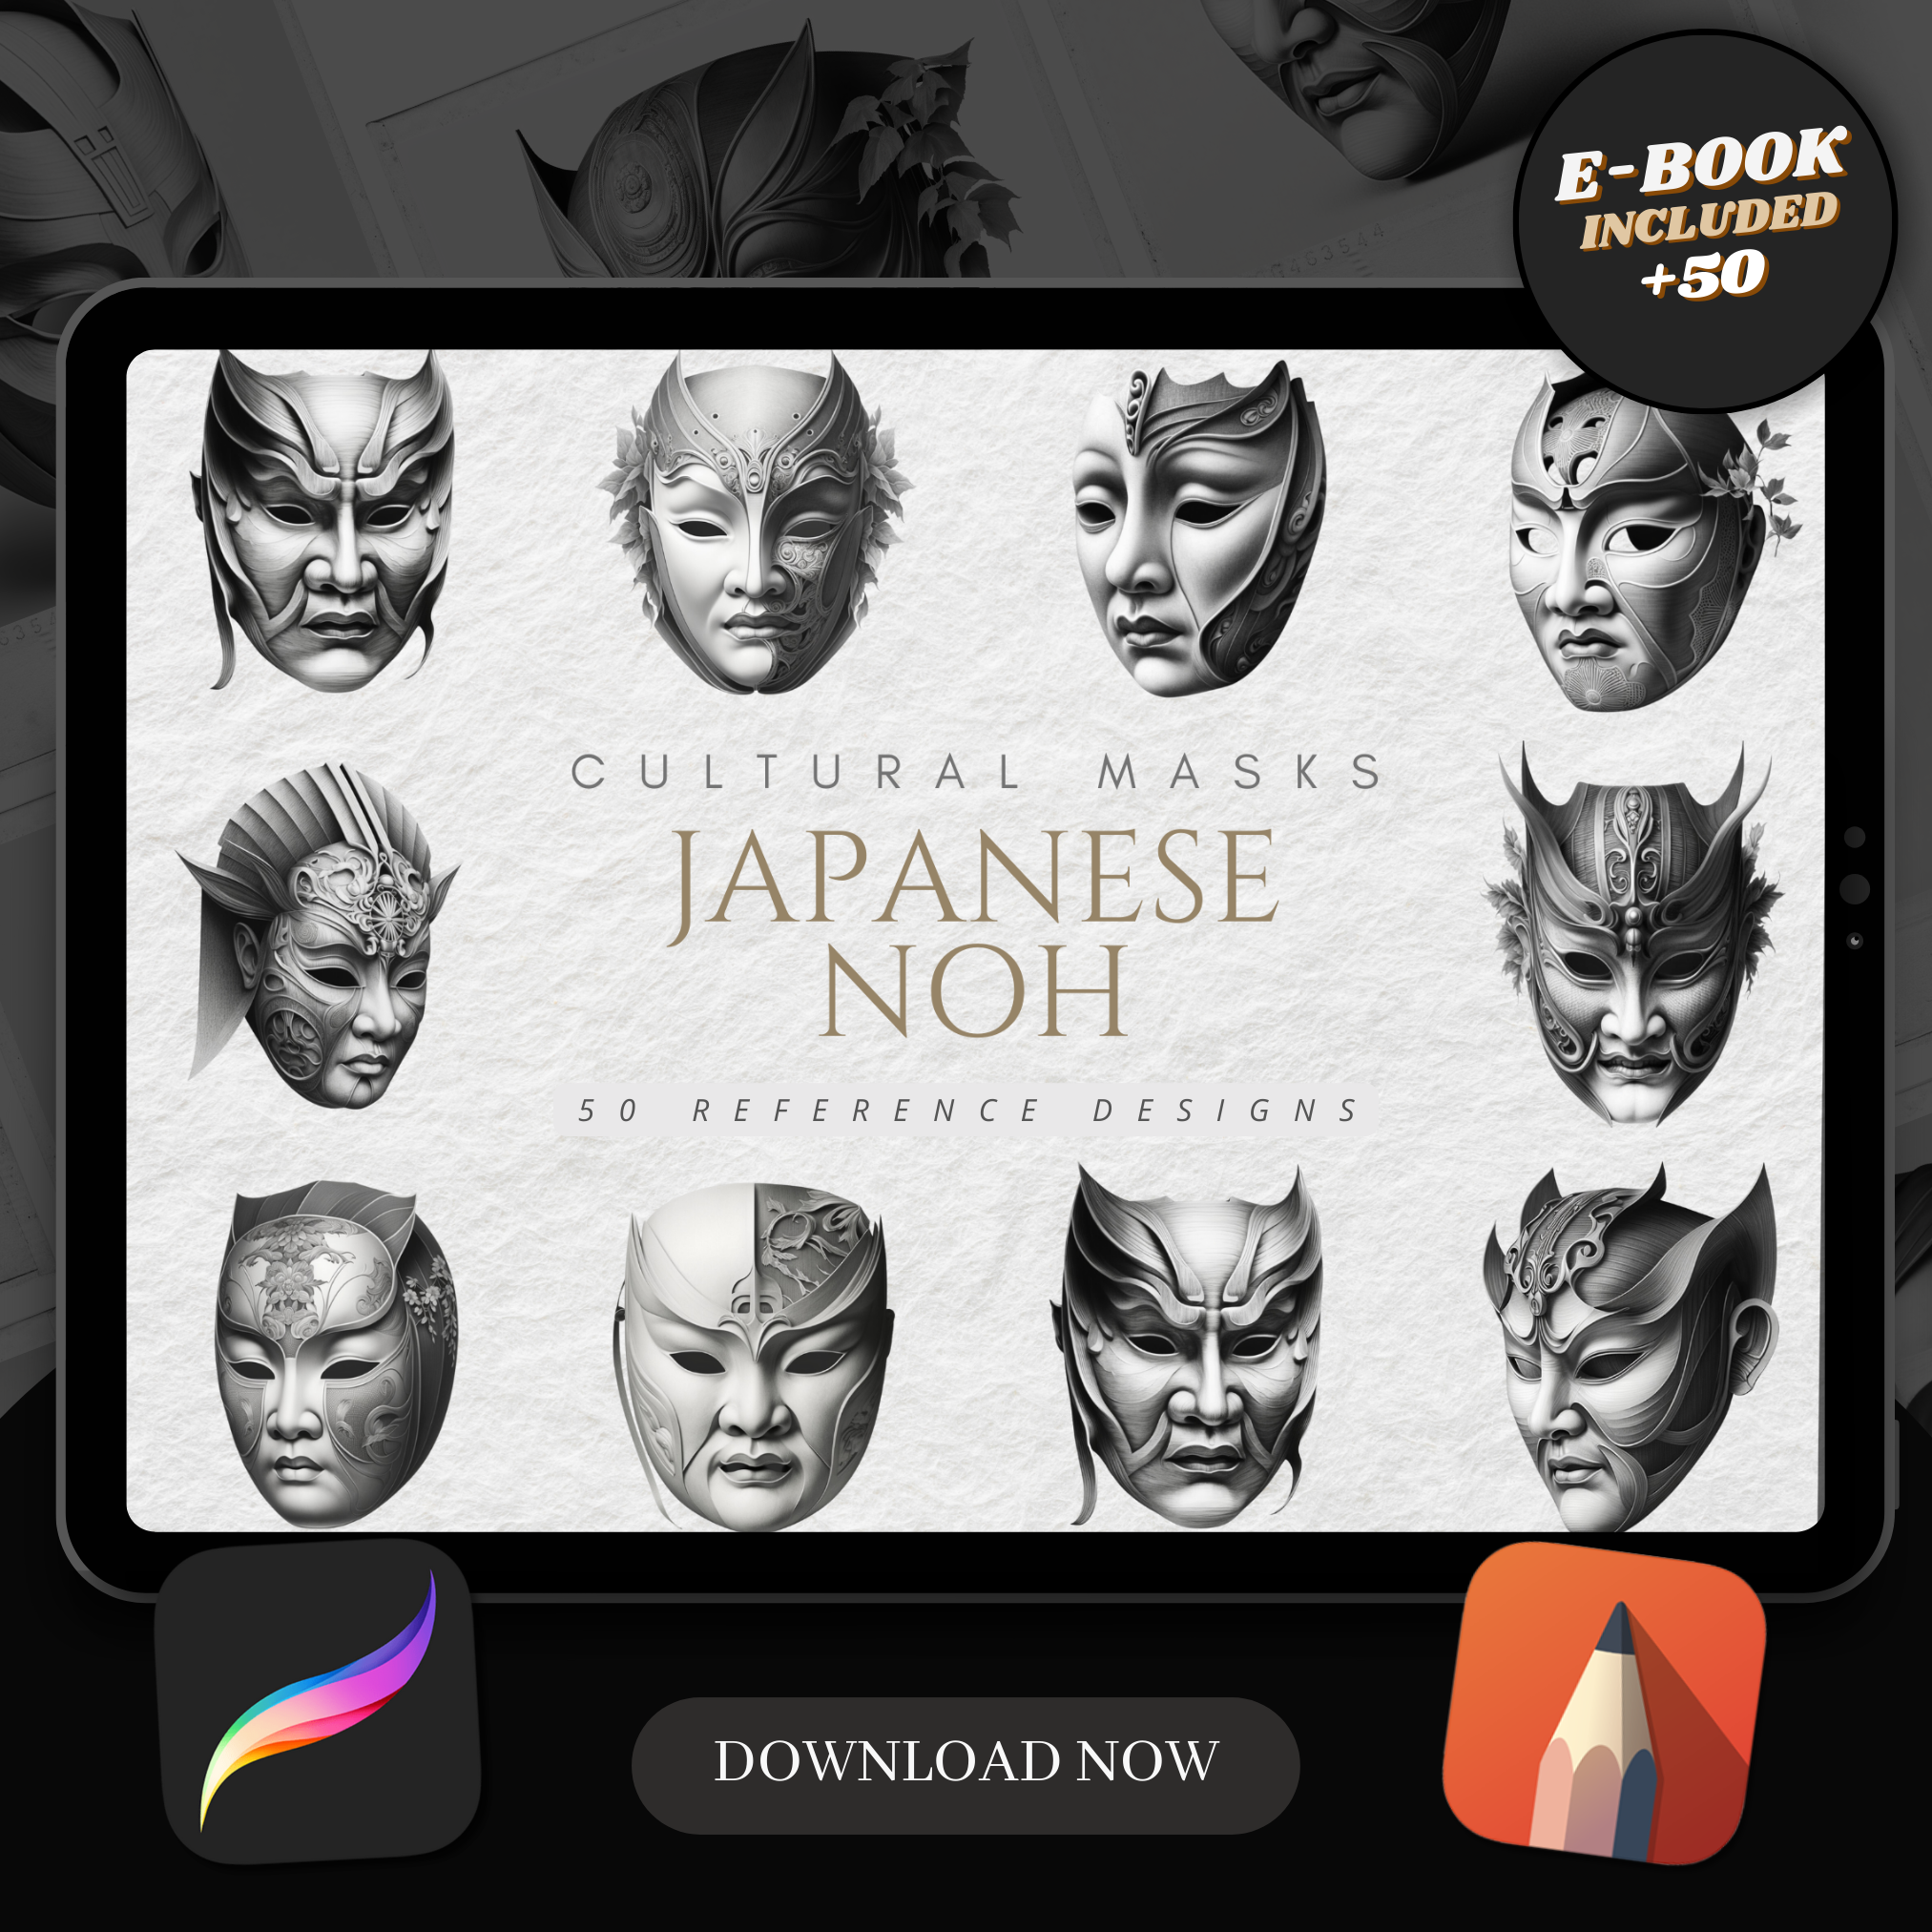 Japanese Noh Masks Digital Reference Design Collection: 50 Procreate & Sketchbook Images